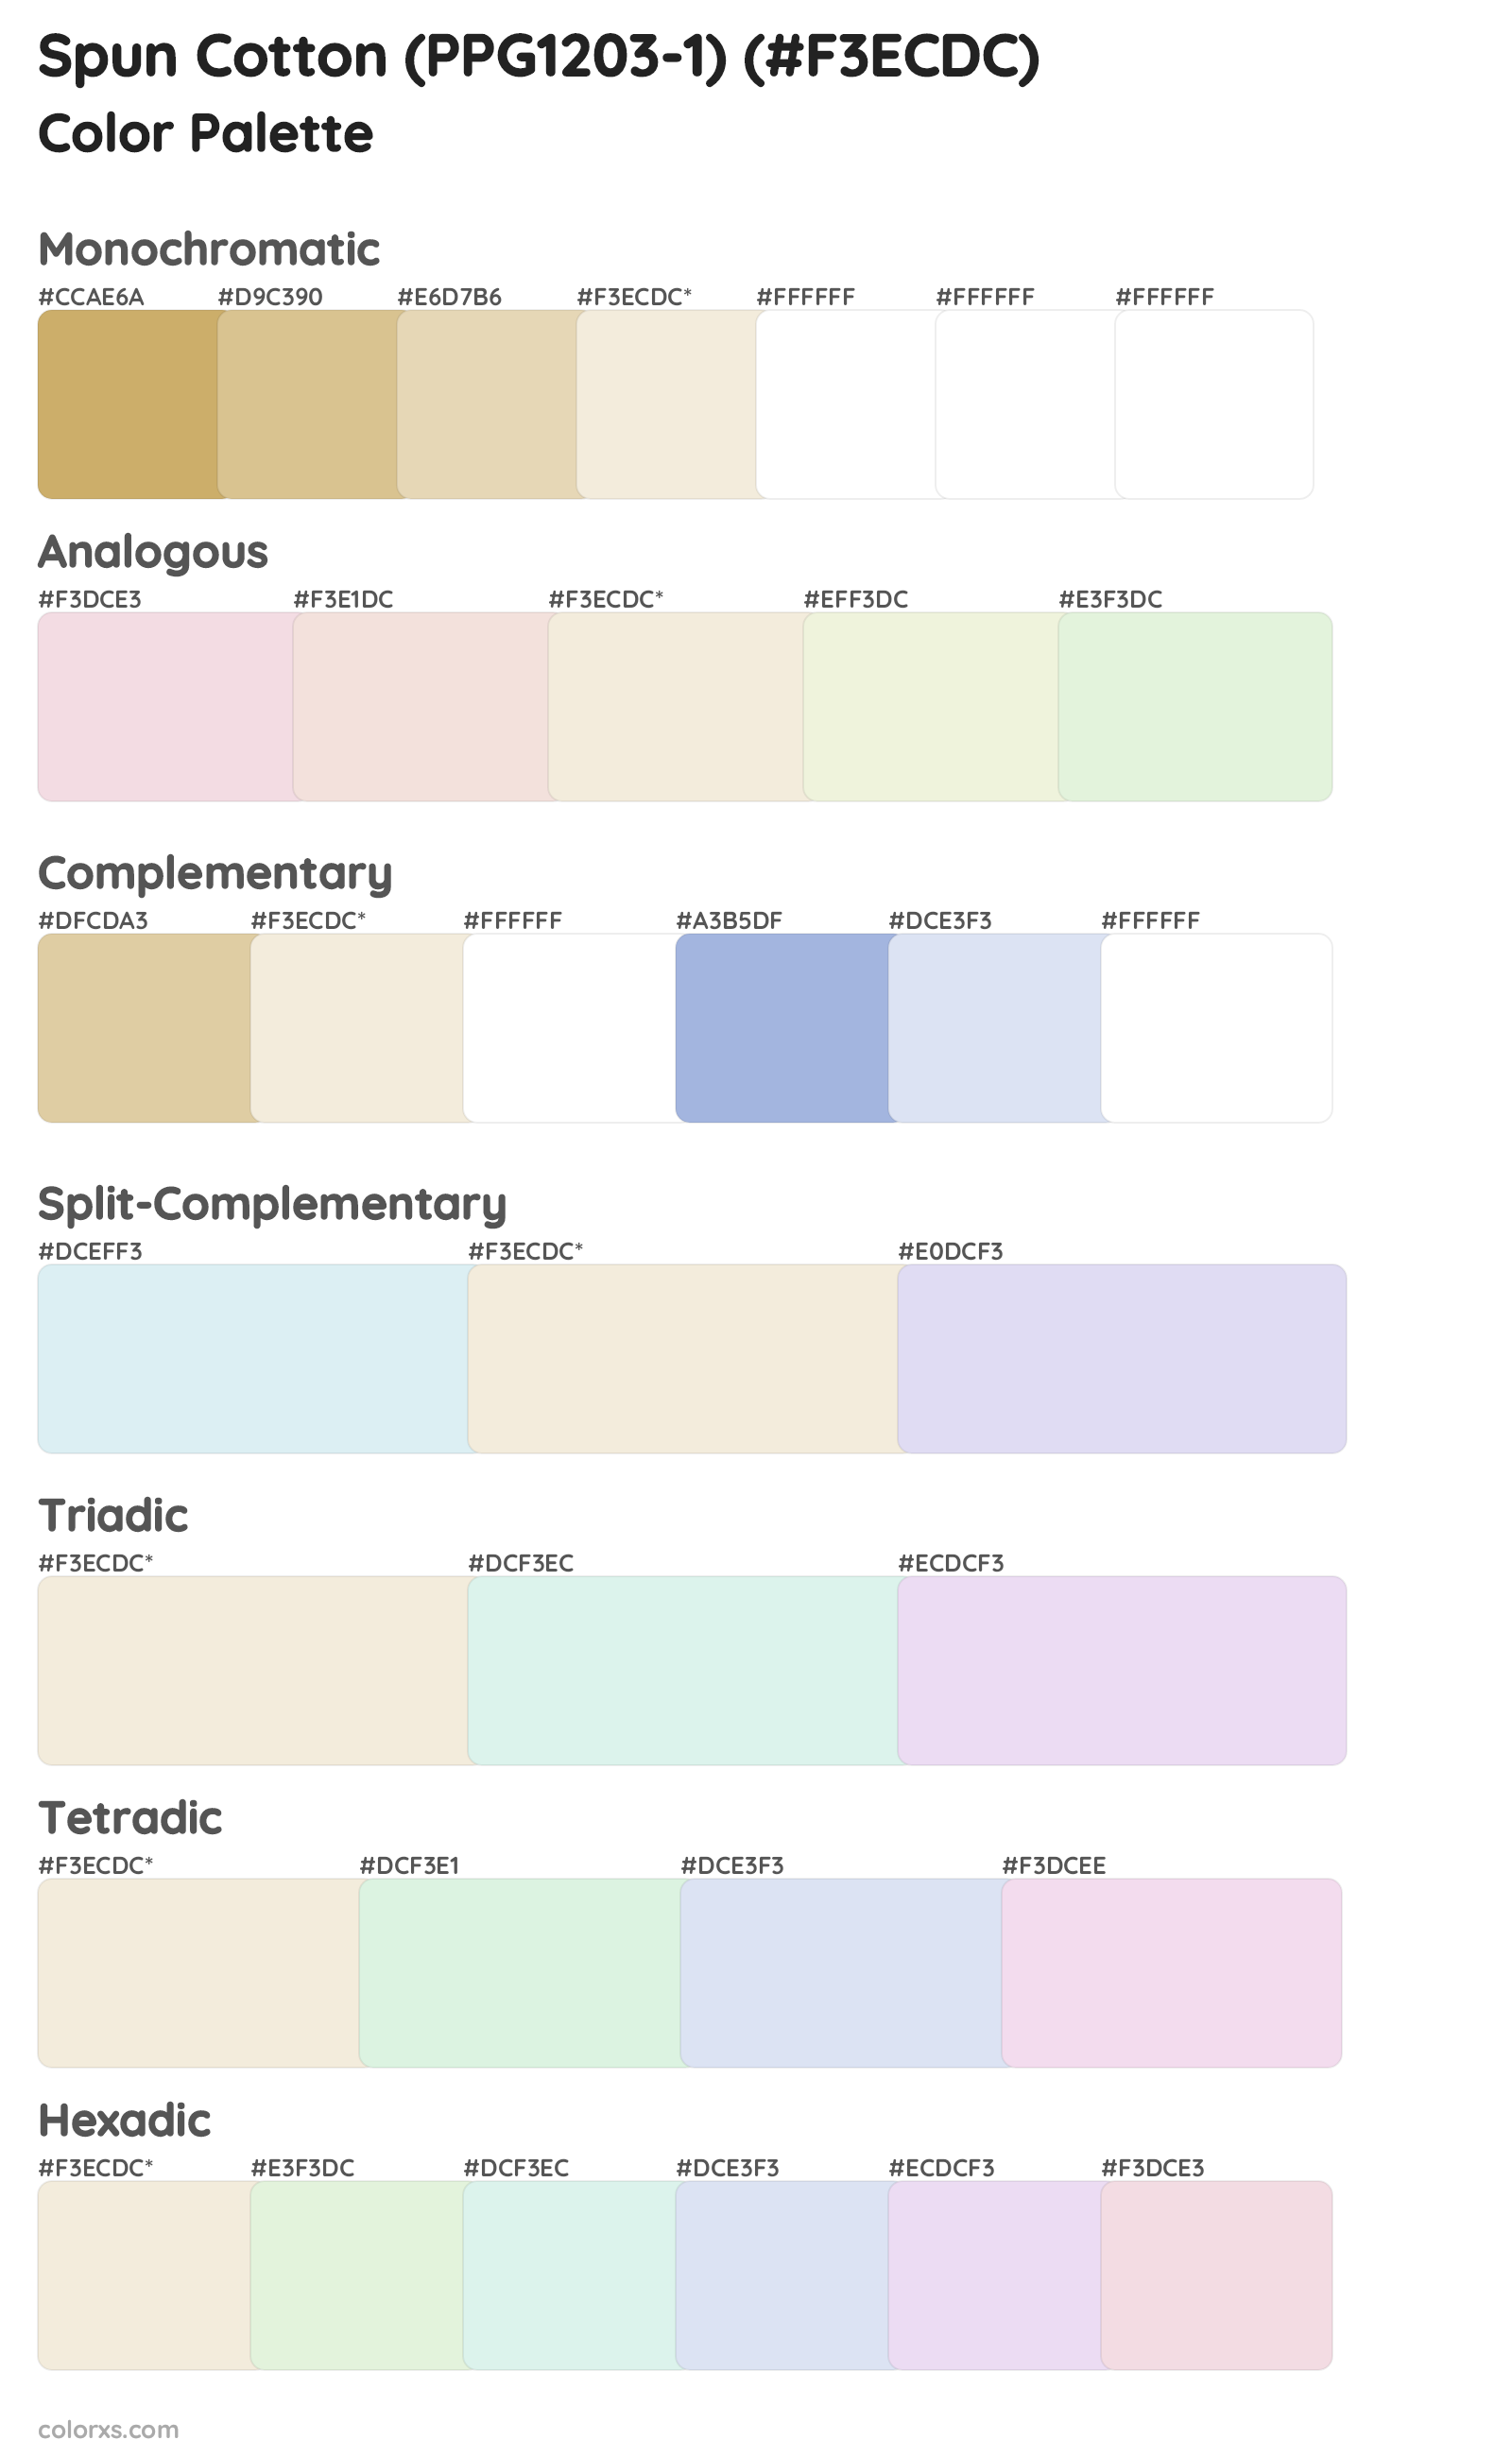 Spun Cotton (PPG1203-1) Color Scheme Palettes